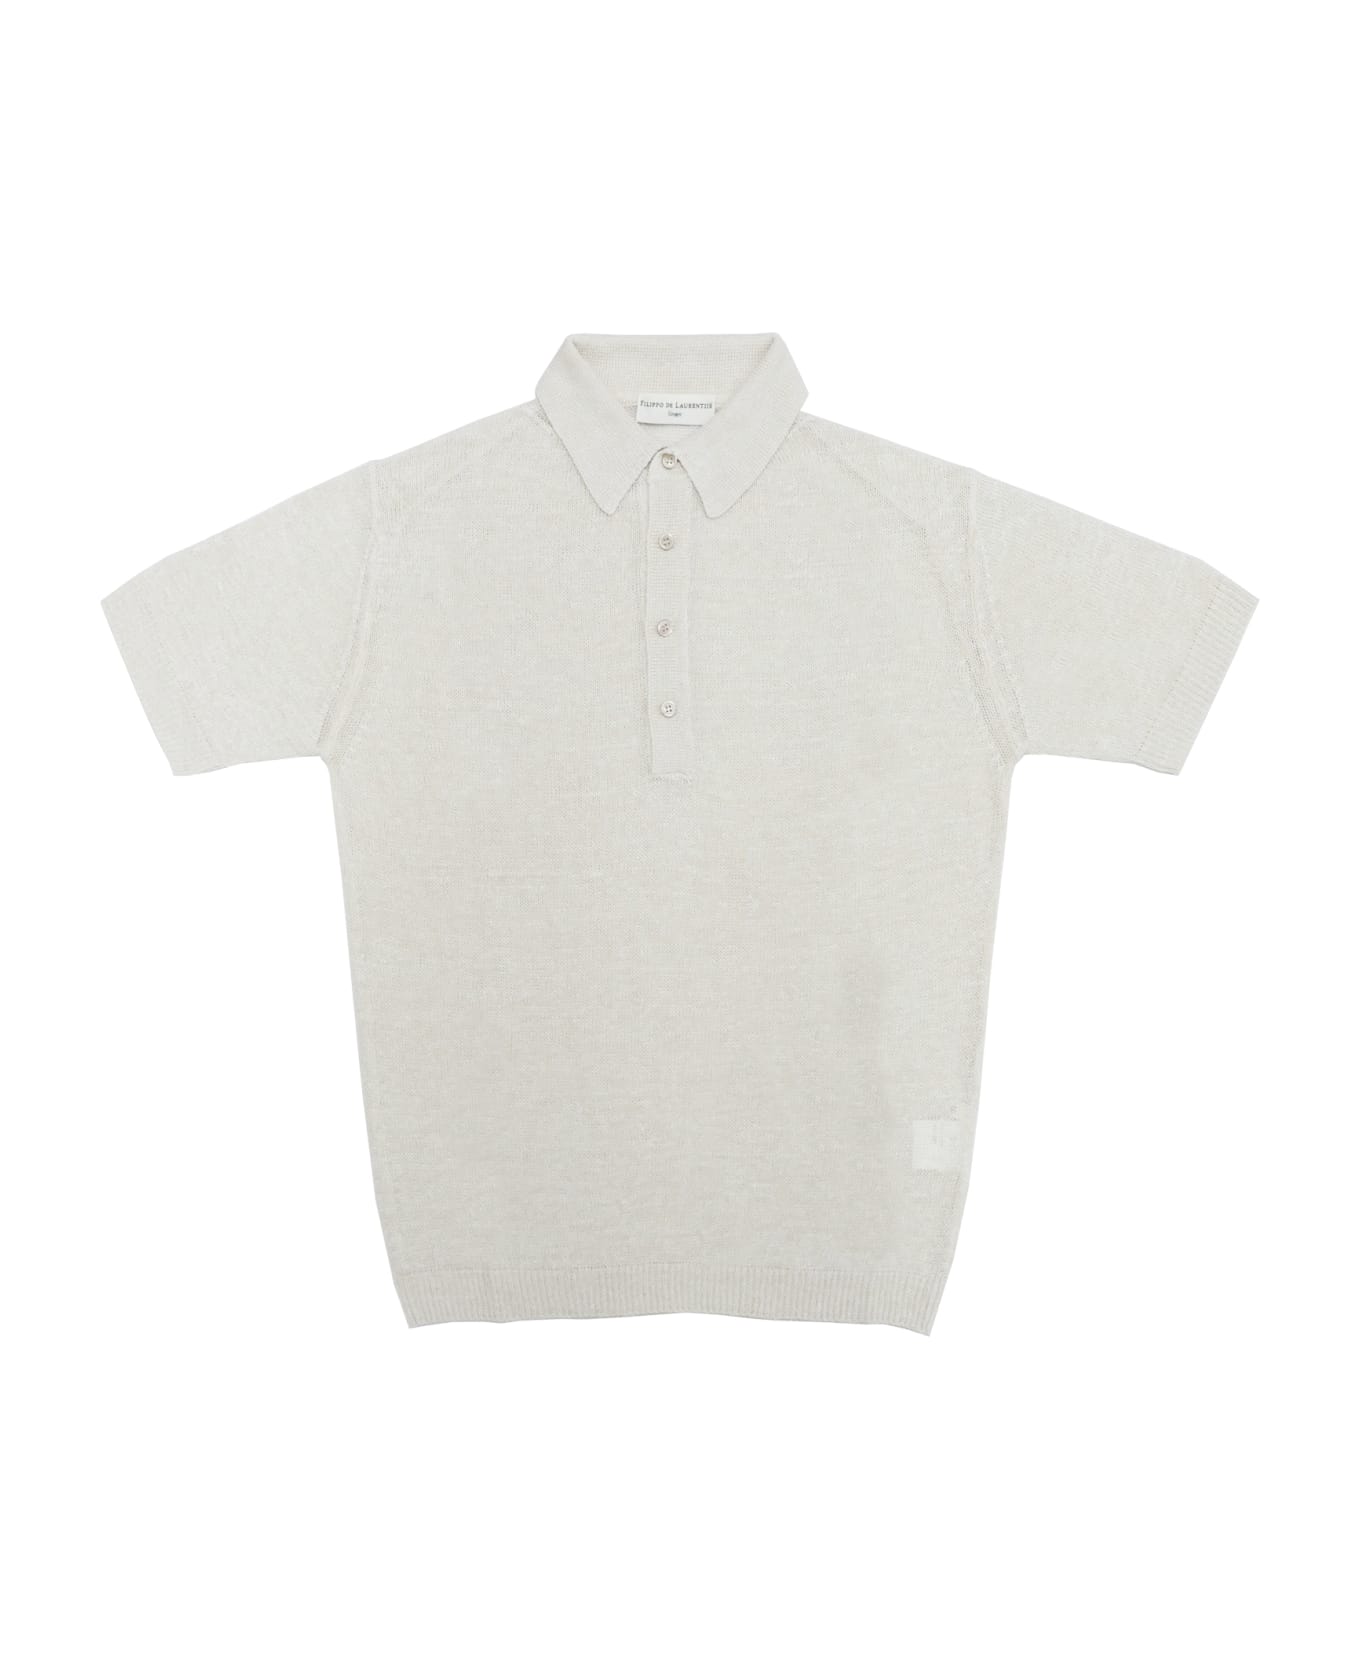 Filippo De Laurentiis Polo Shirt - White ポロシャツ